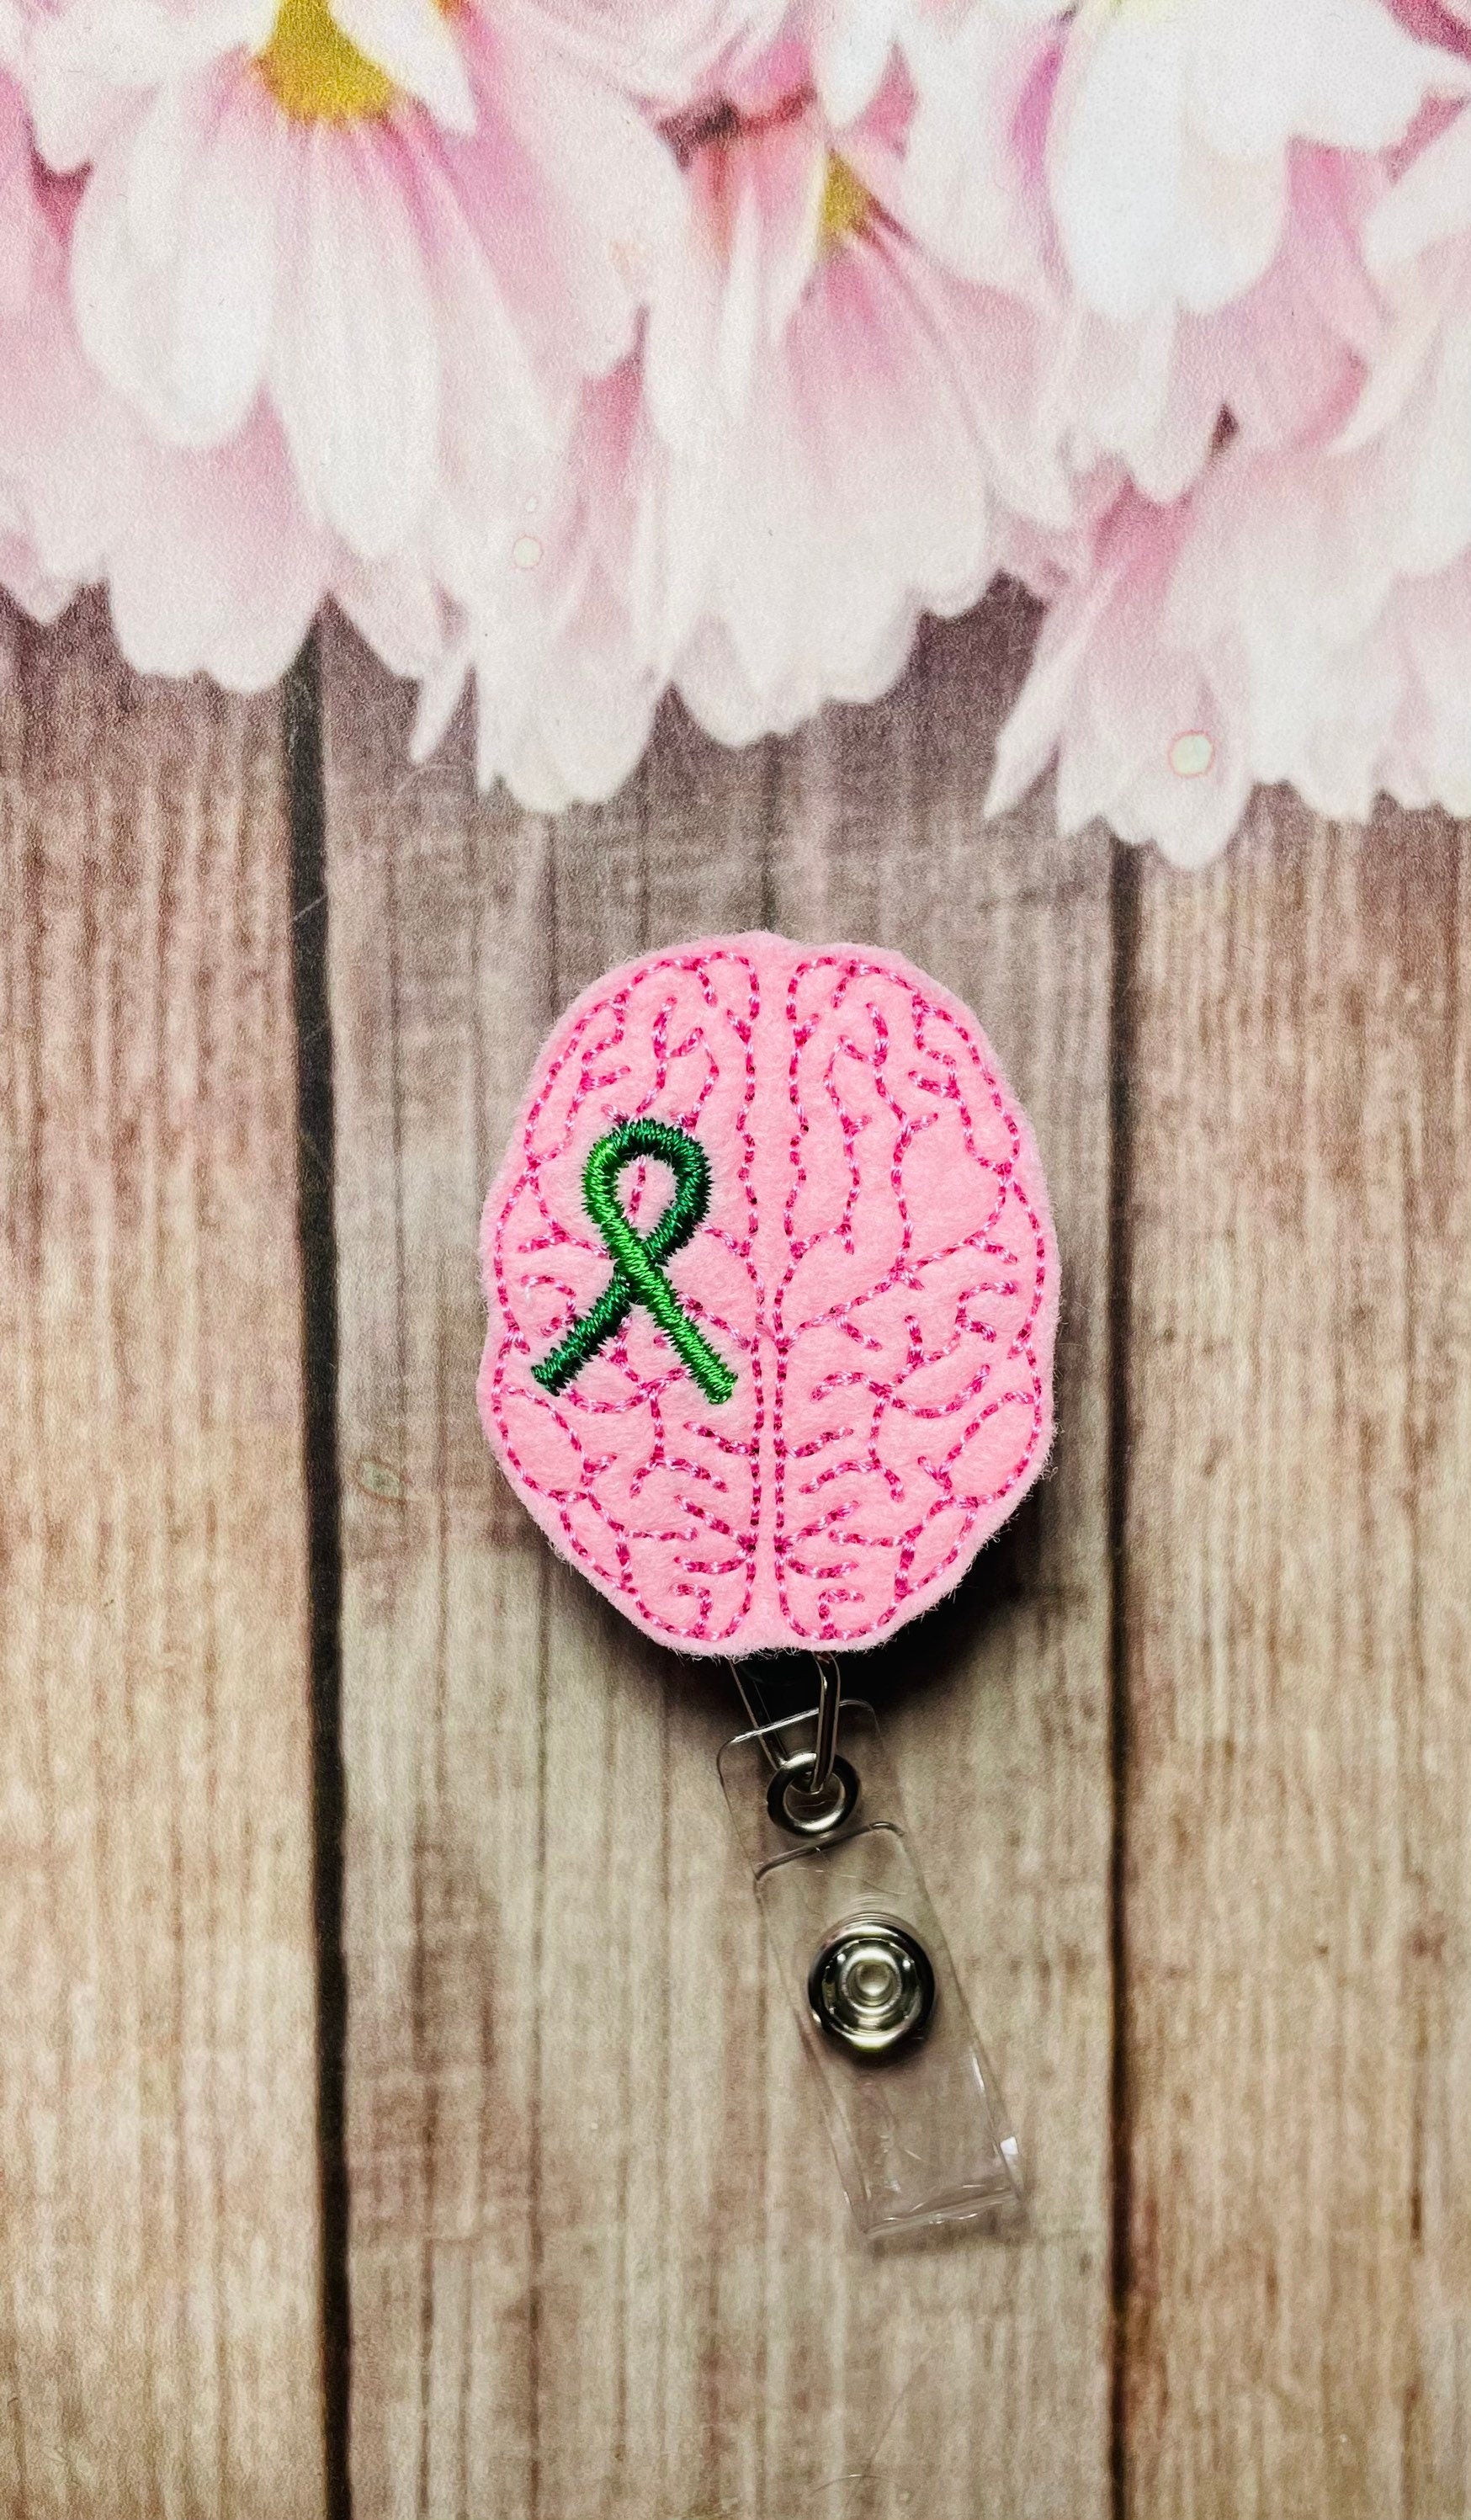 Brain shunt awareness retractable badge reel, ID lanyard